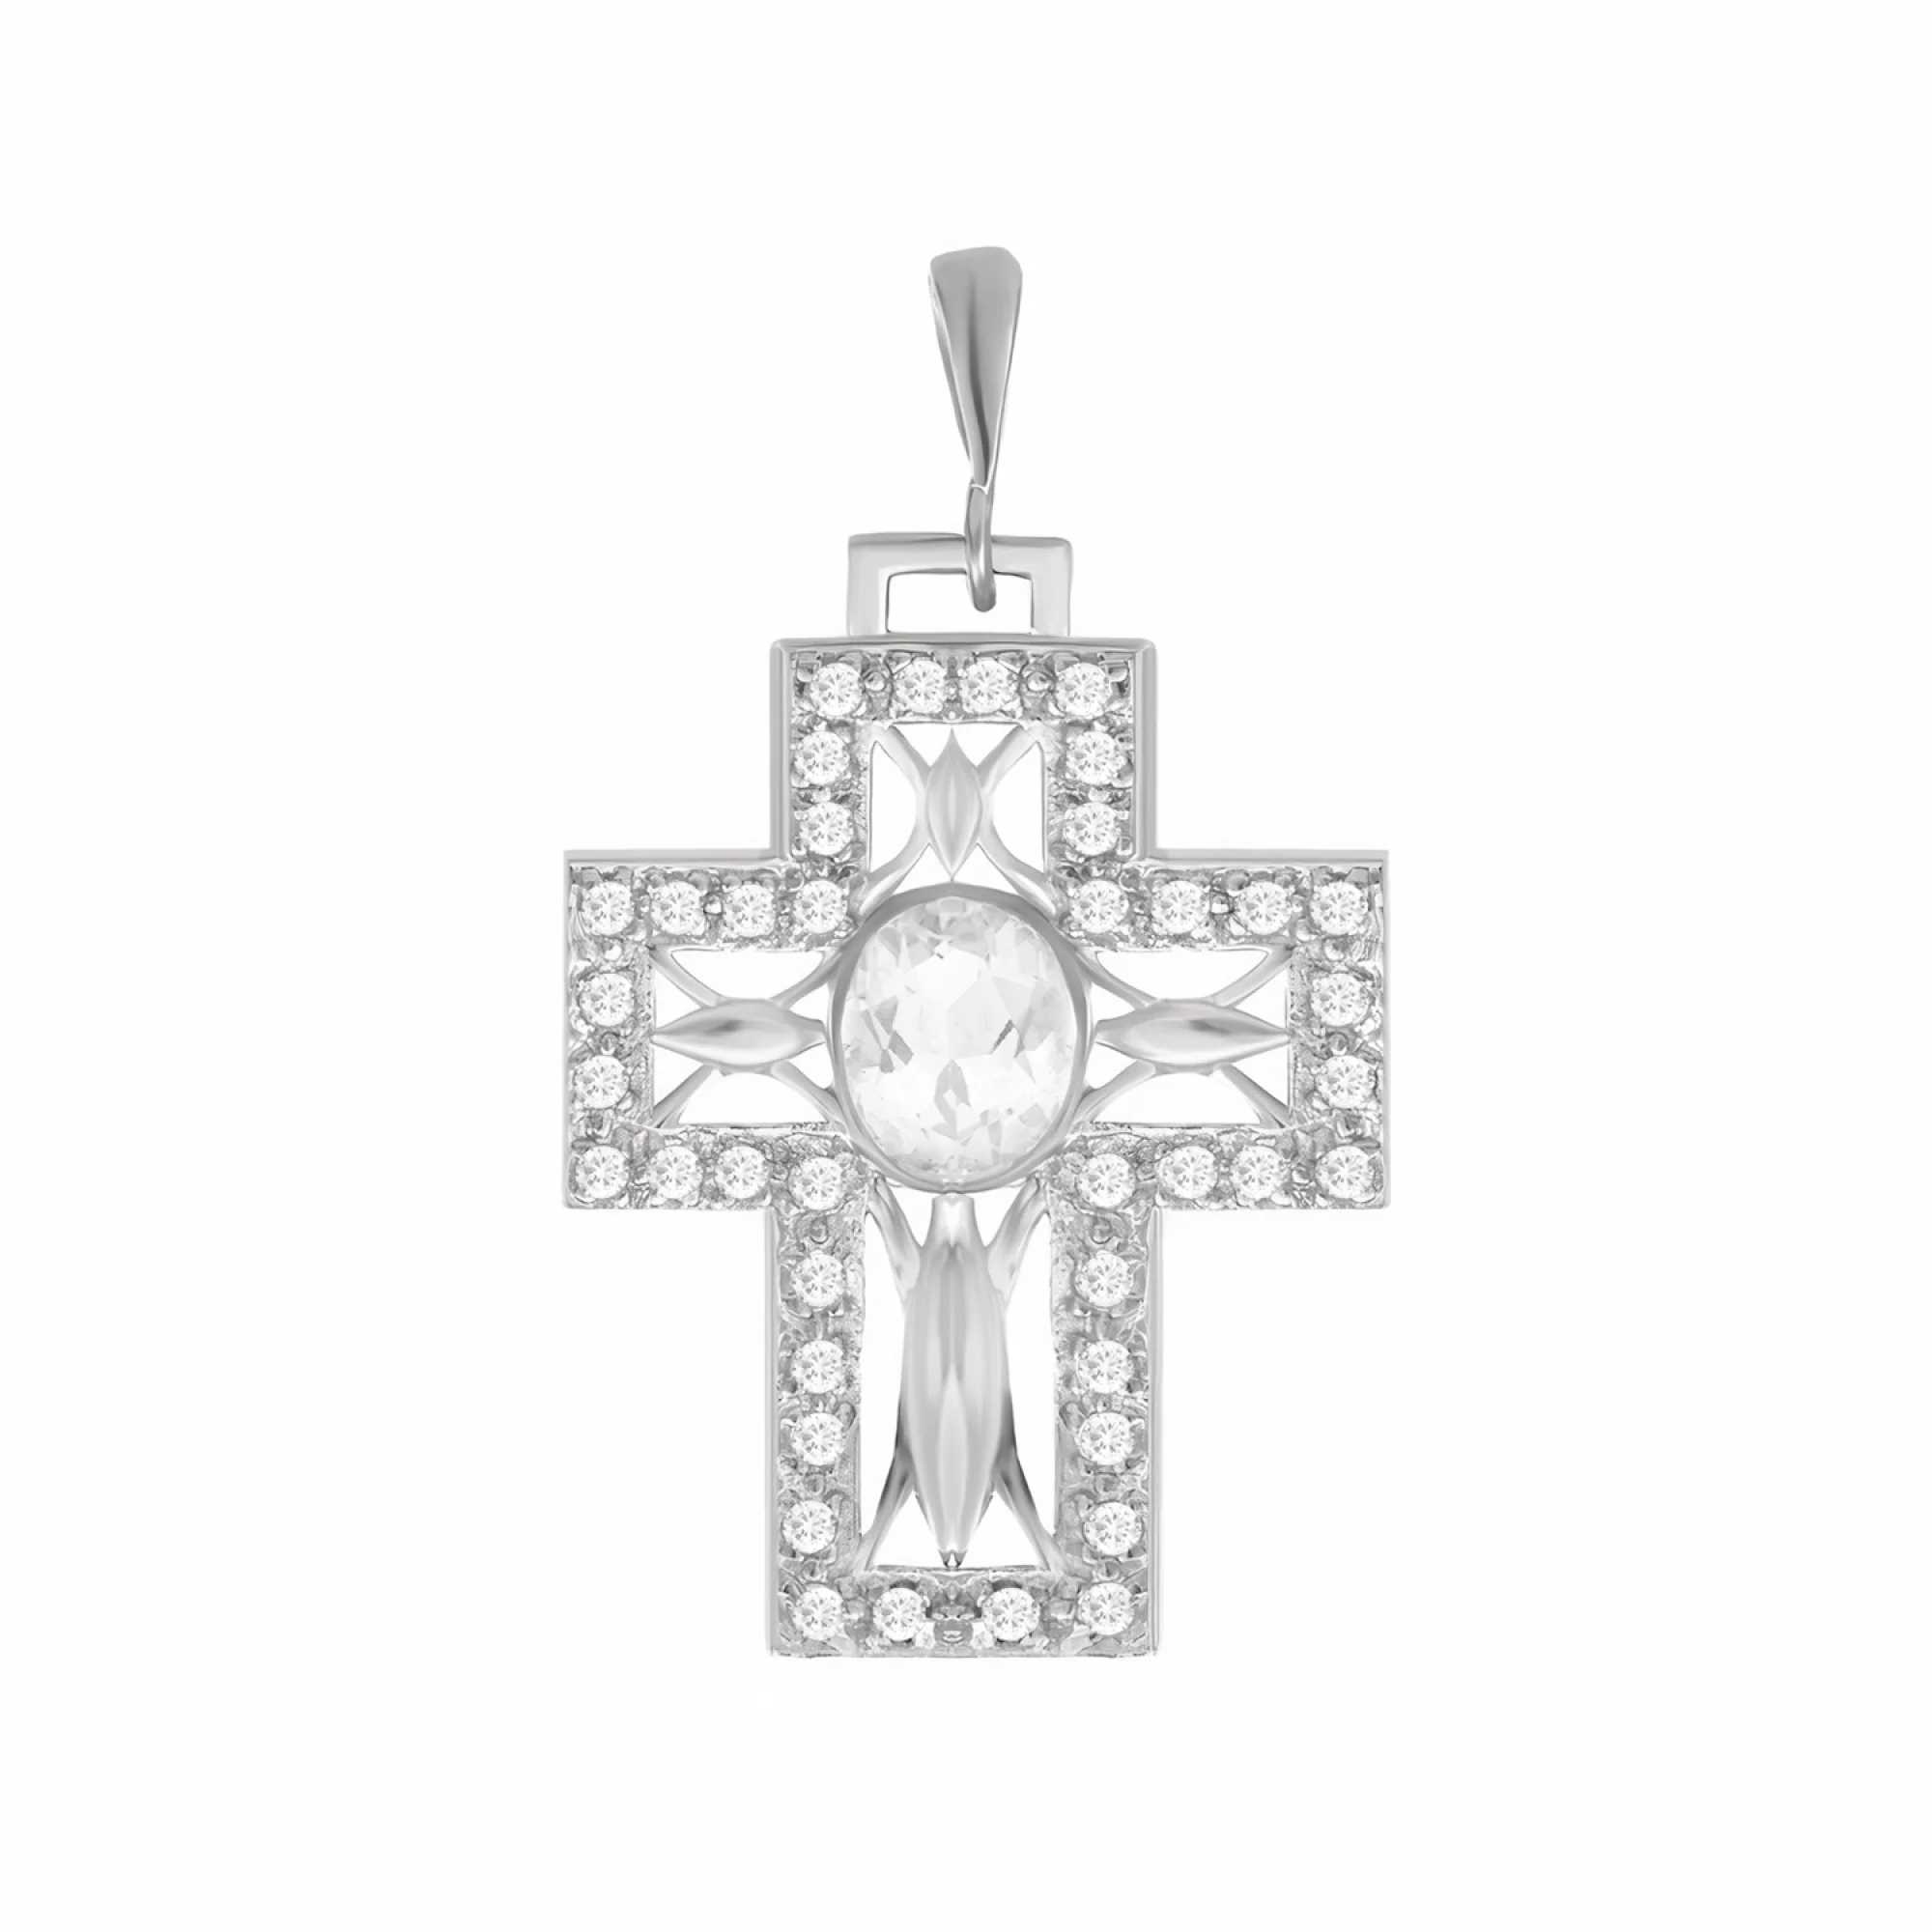 Крестик из серебра с фианитами - 1517194 – изображение 1